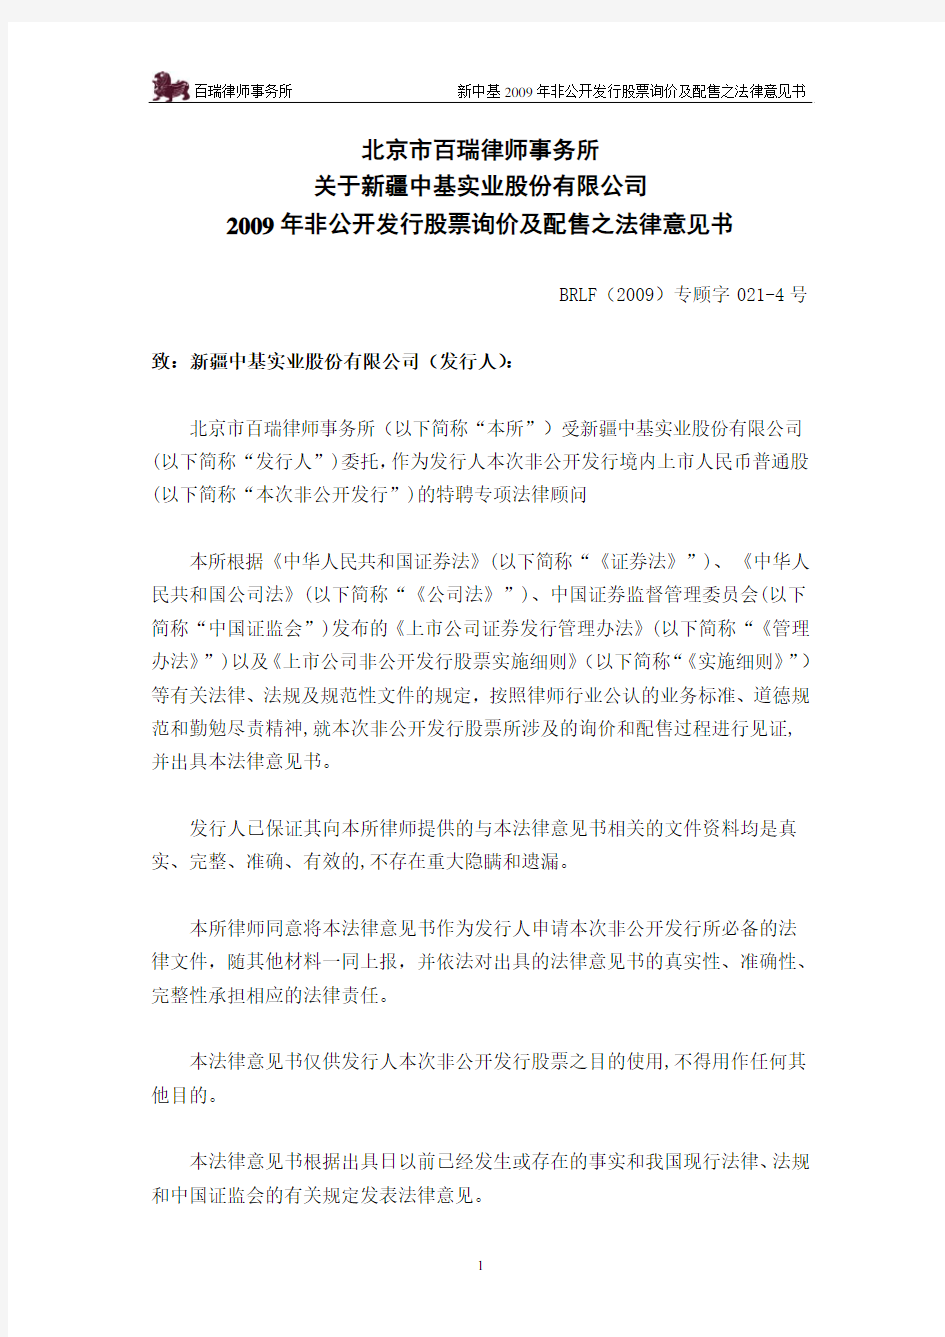 新 中 基：北京市百瑞律师事务所关于公司2009年非公开发行股票询价及配售之见证法律意见书 2010-04-27